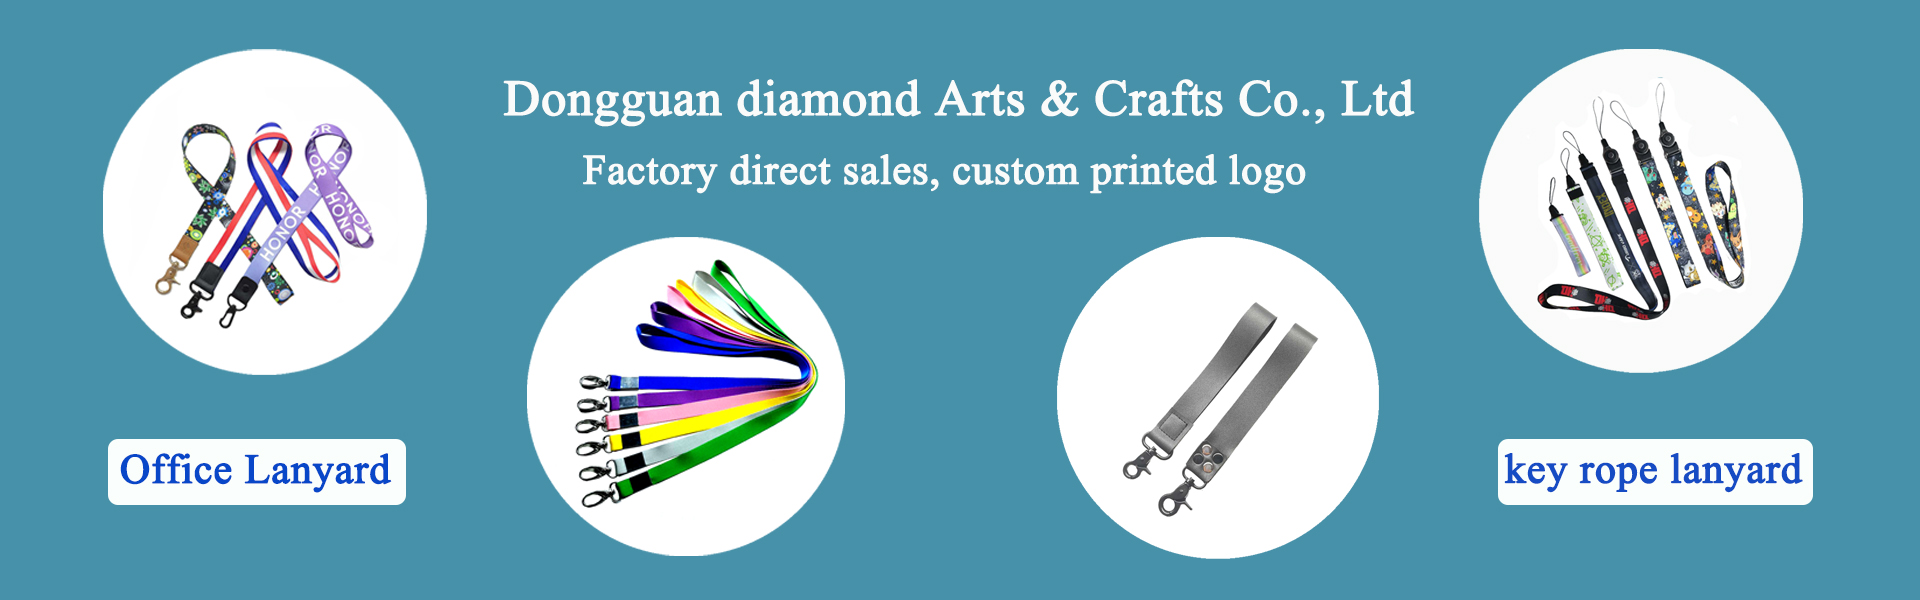 เชือกผูกอุปกรณ์เสริมเสื้อผ้าและอุปกรณ์สัตว์เลี้ยง,Dongguan diamond Arts & Crafts Co., Ltd